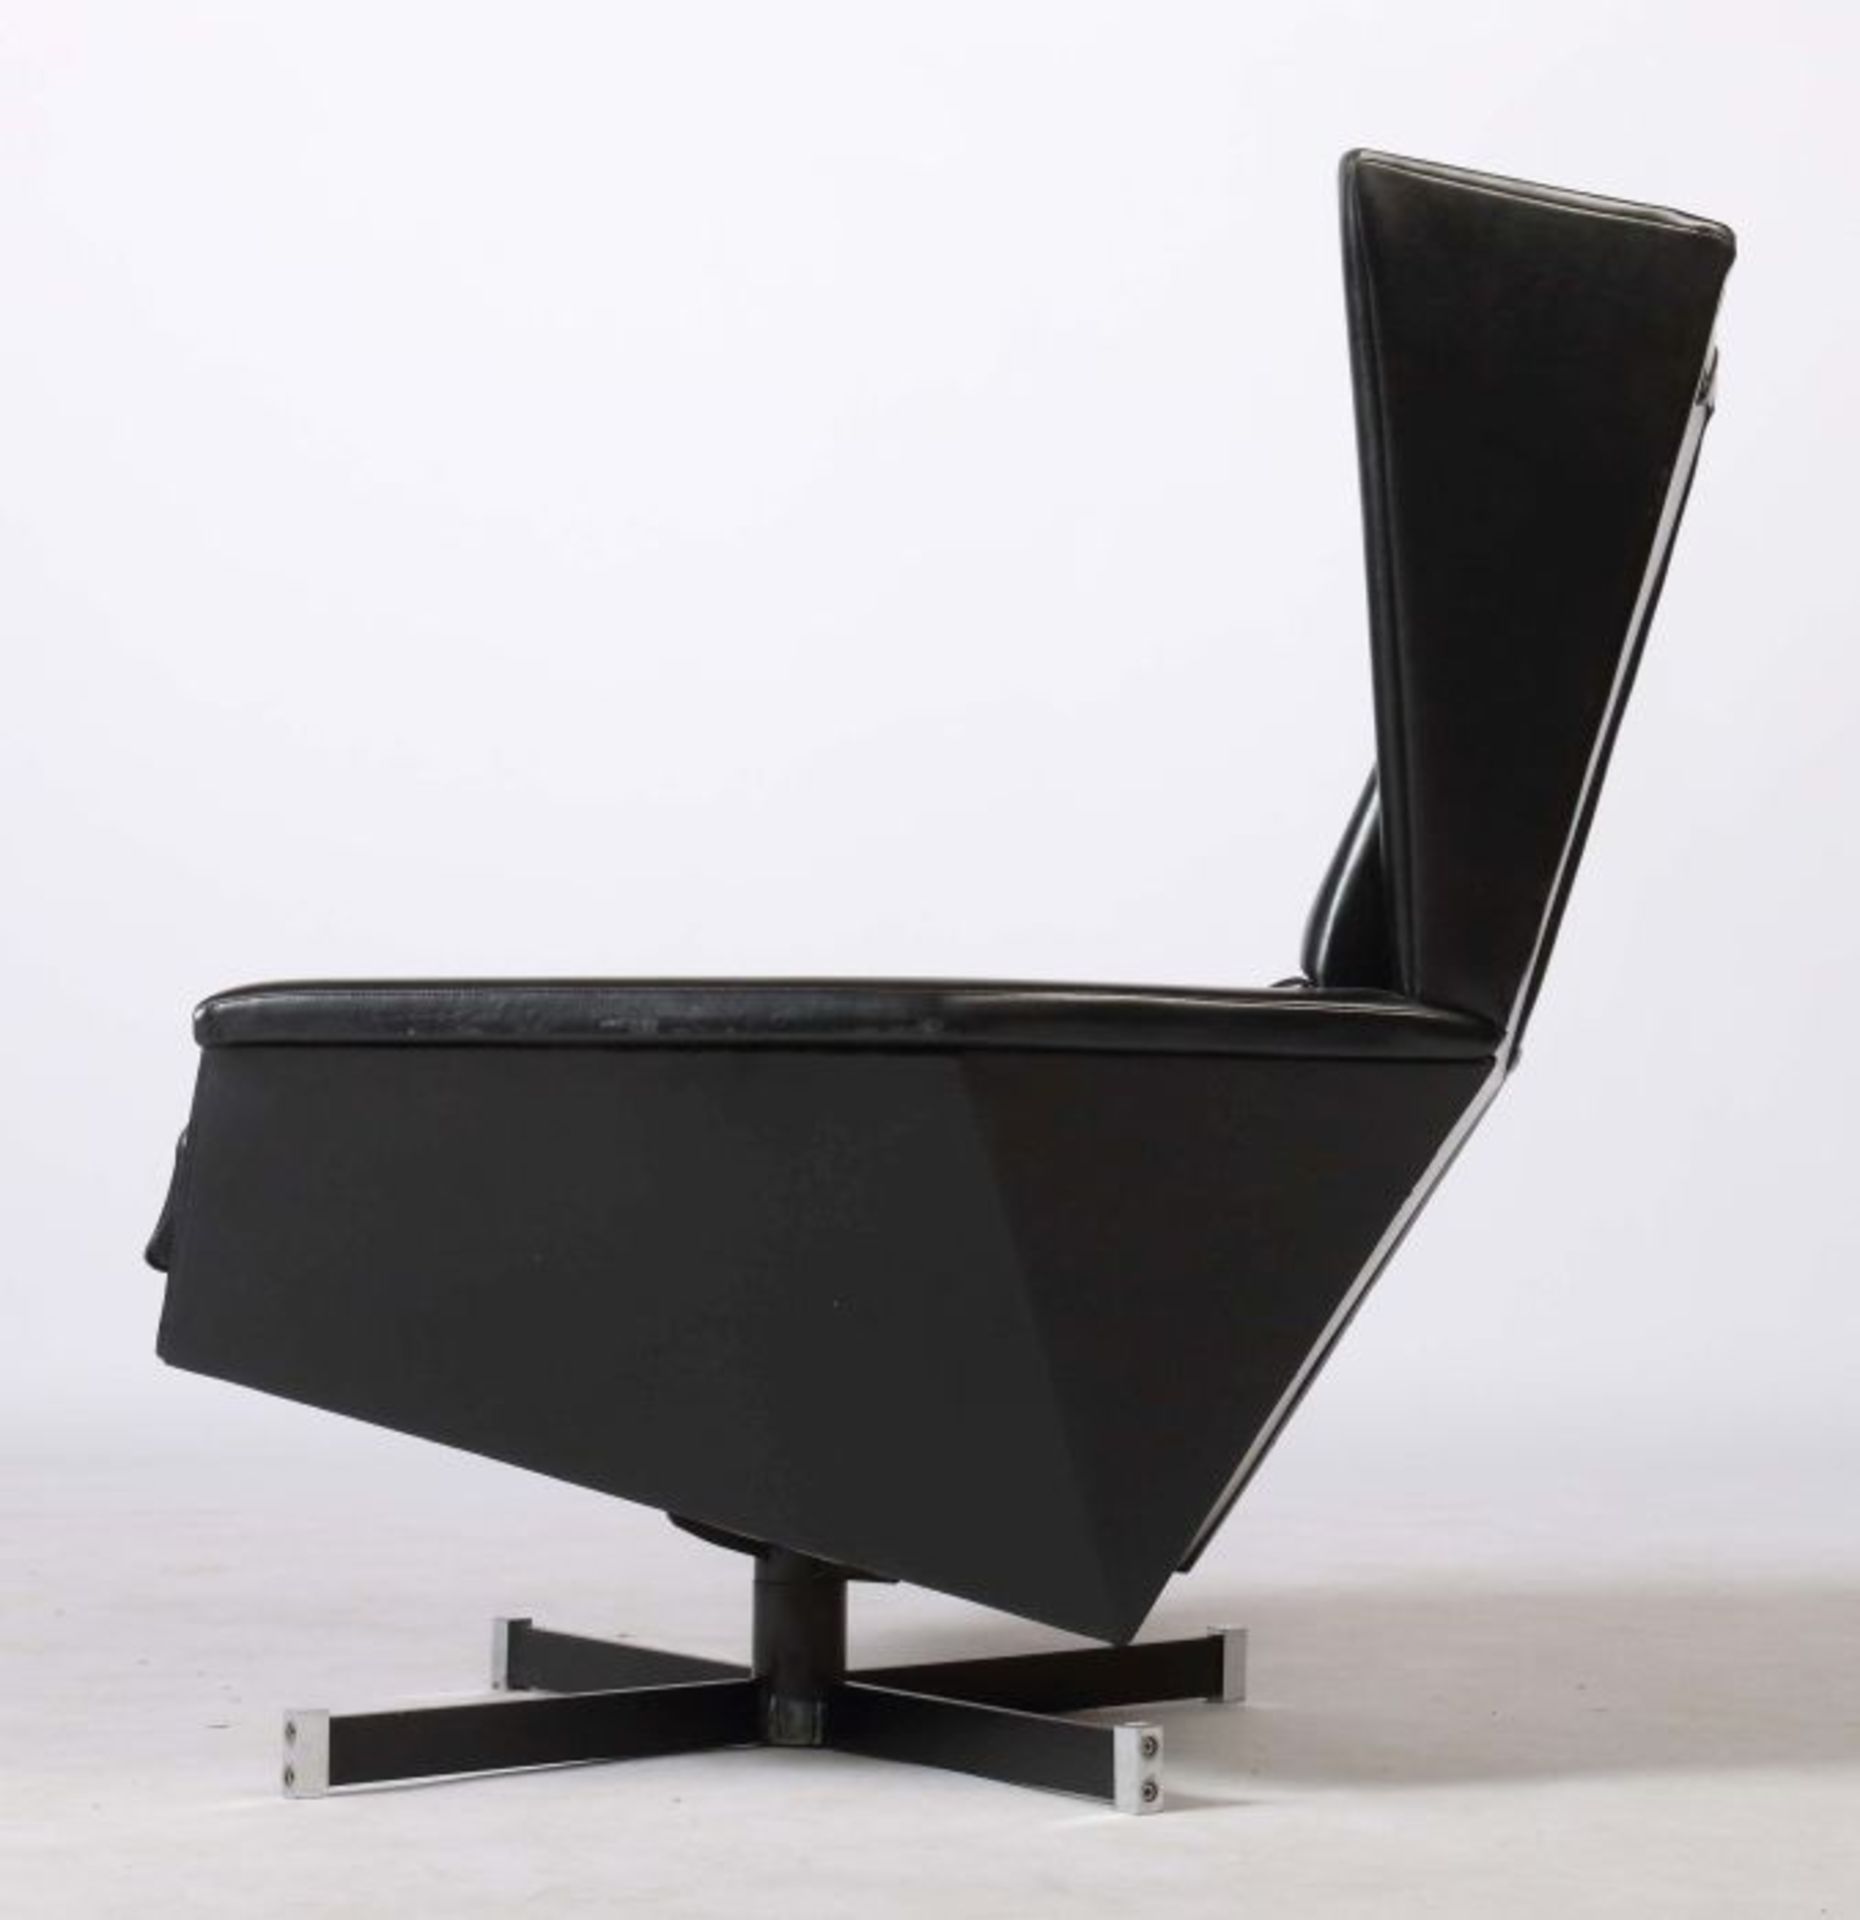 Ledersessel Wohl Italien 1960er Jahre, kubisch geformter Sessel mit kleinem Nackenkissen an Bändern - Bild 3 aus 3